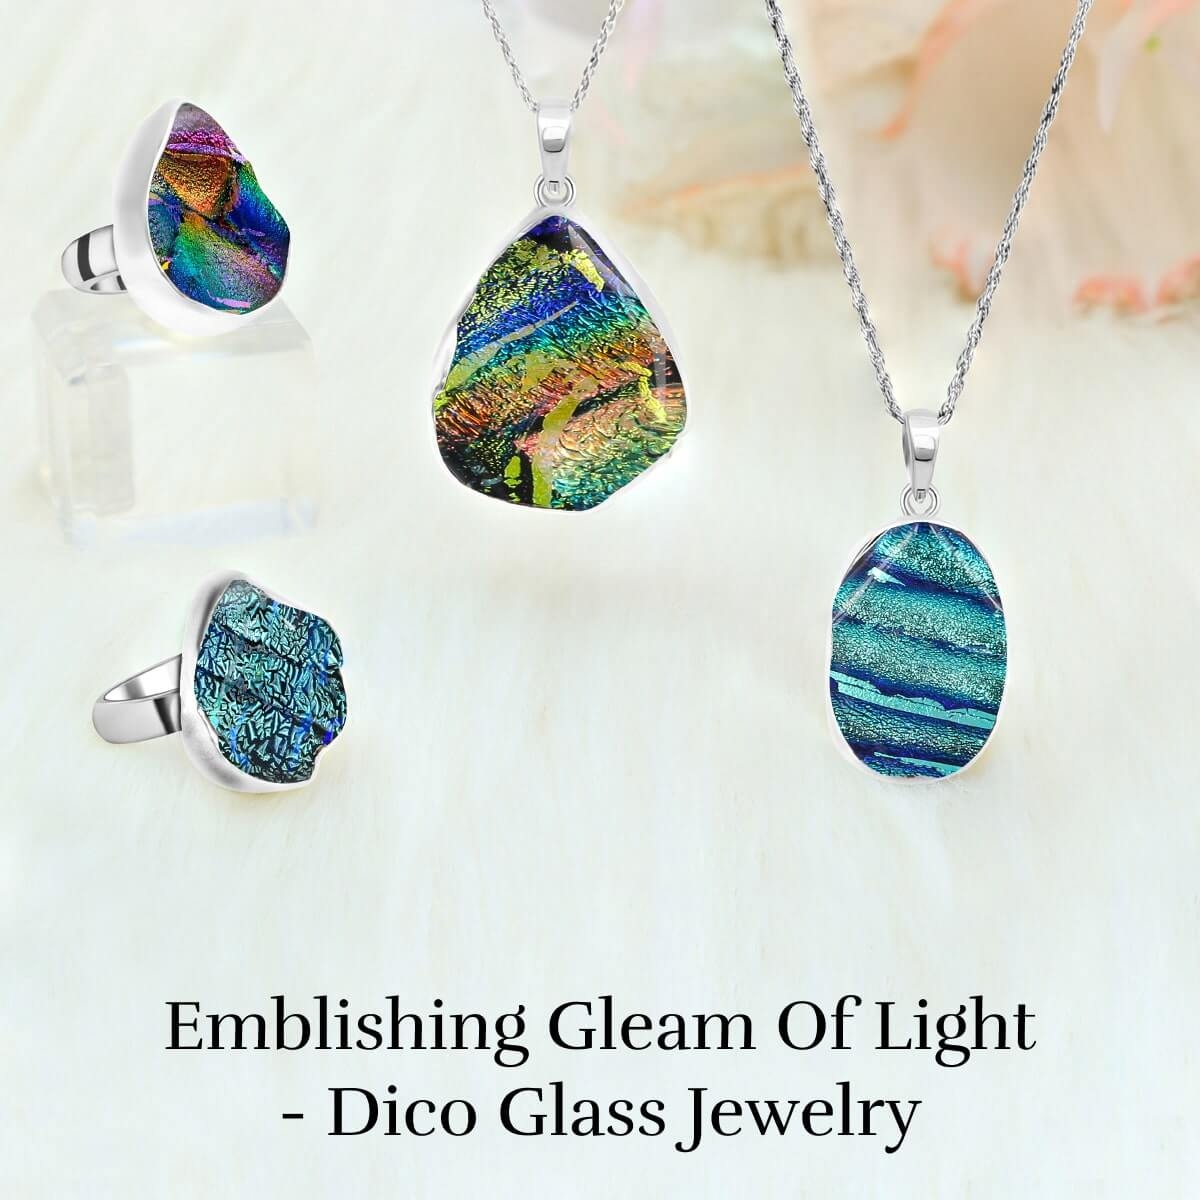 Dico Glass Jewelry